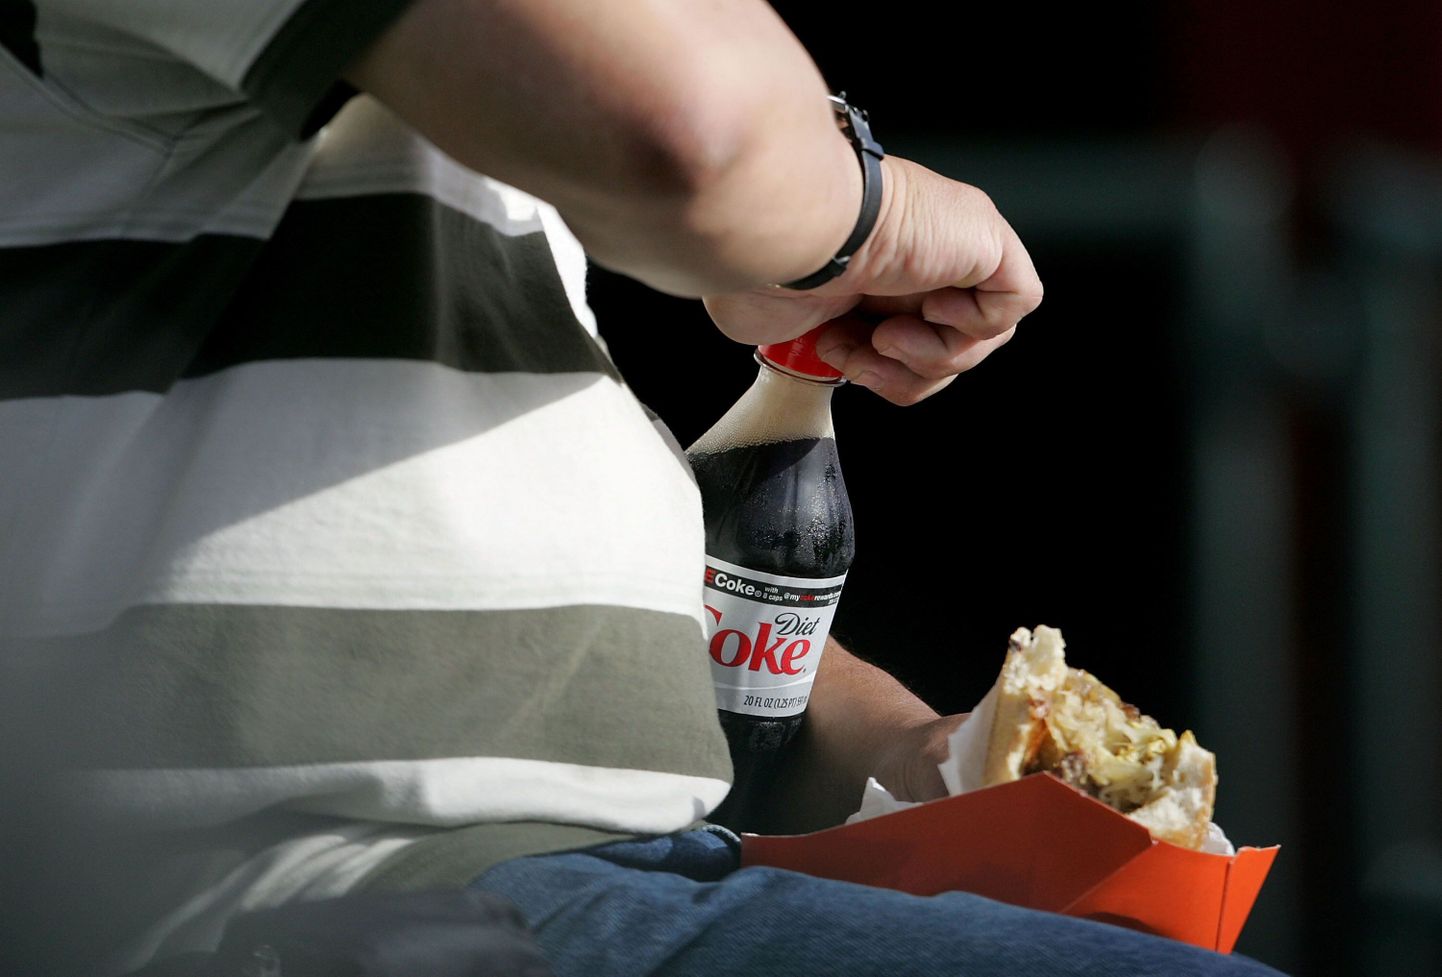 Kui ameeriklased ei paranda oma toitumisharjumusi, ähvardab diabeedihaigete hulk USAs mitmekordistuda.